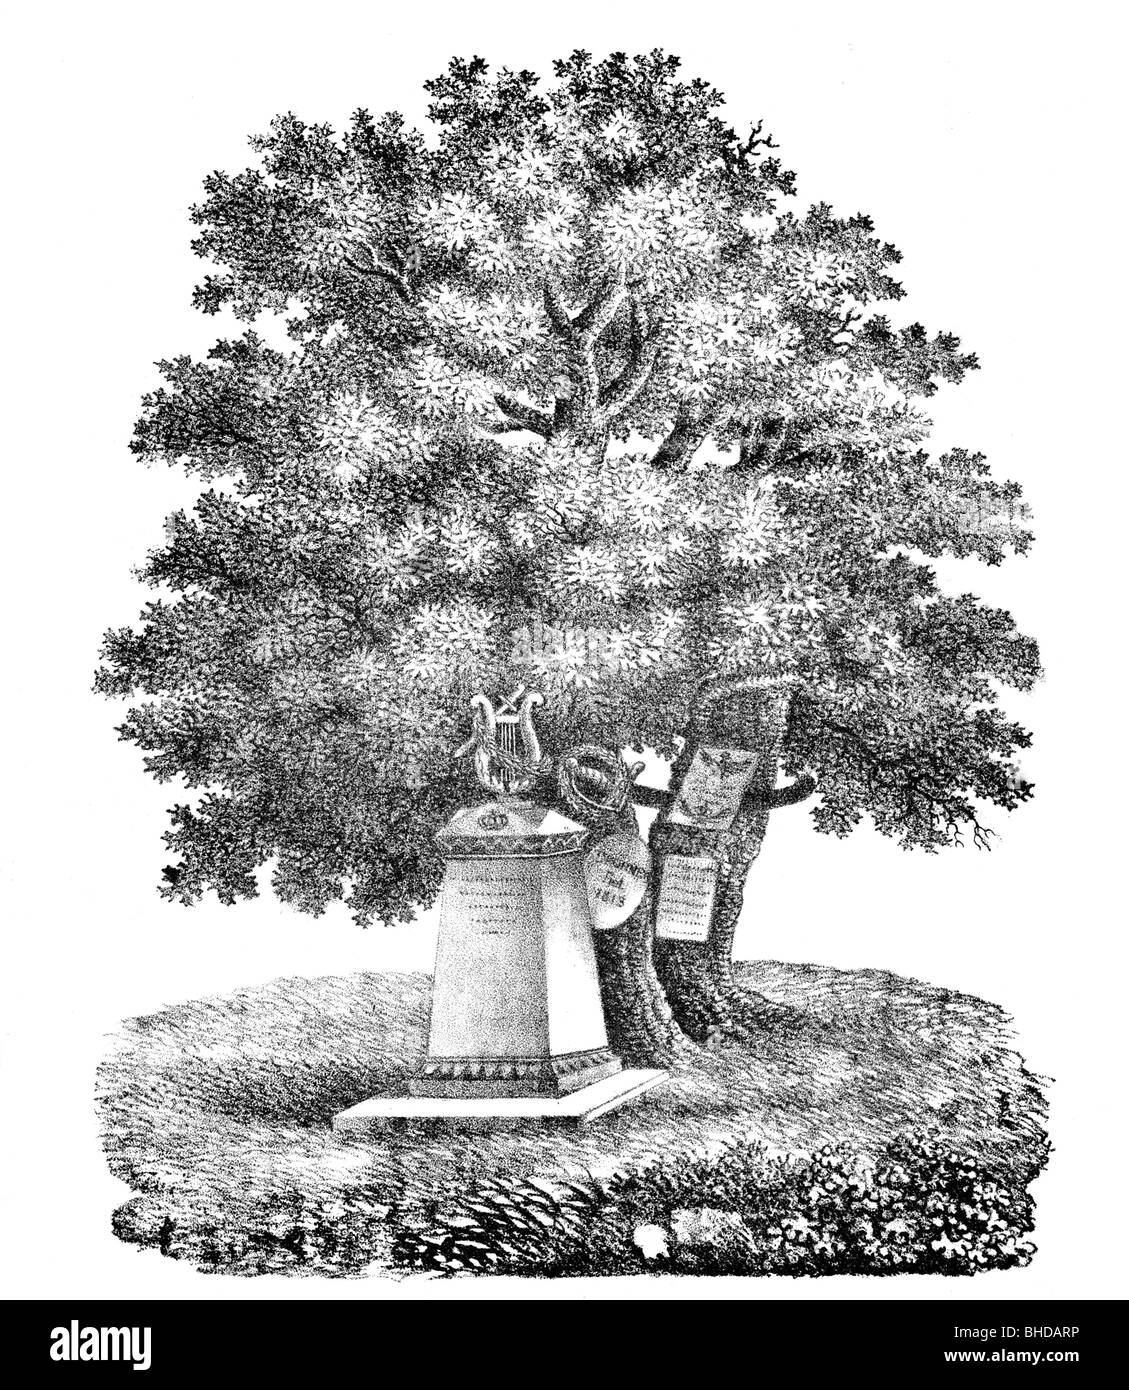 Koerner, Karl Theodor, 23.9.1791 - 26.8.1813, poeta tedesco, la sua tomba sotto un albero di quercia a Woebbelin, Meclemburgo, Germania, dove morì nelle guerre napoleoniche, litografia, Foto Stock